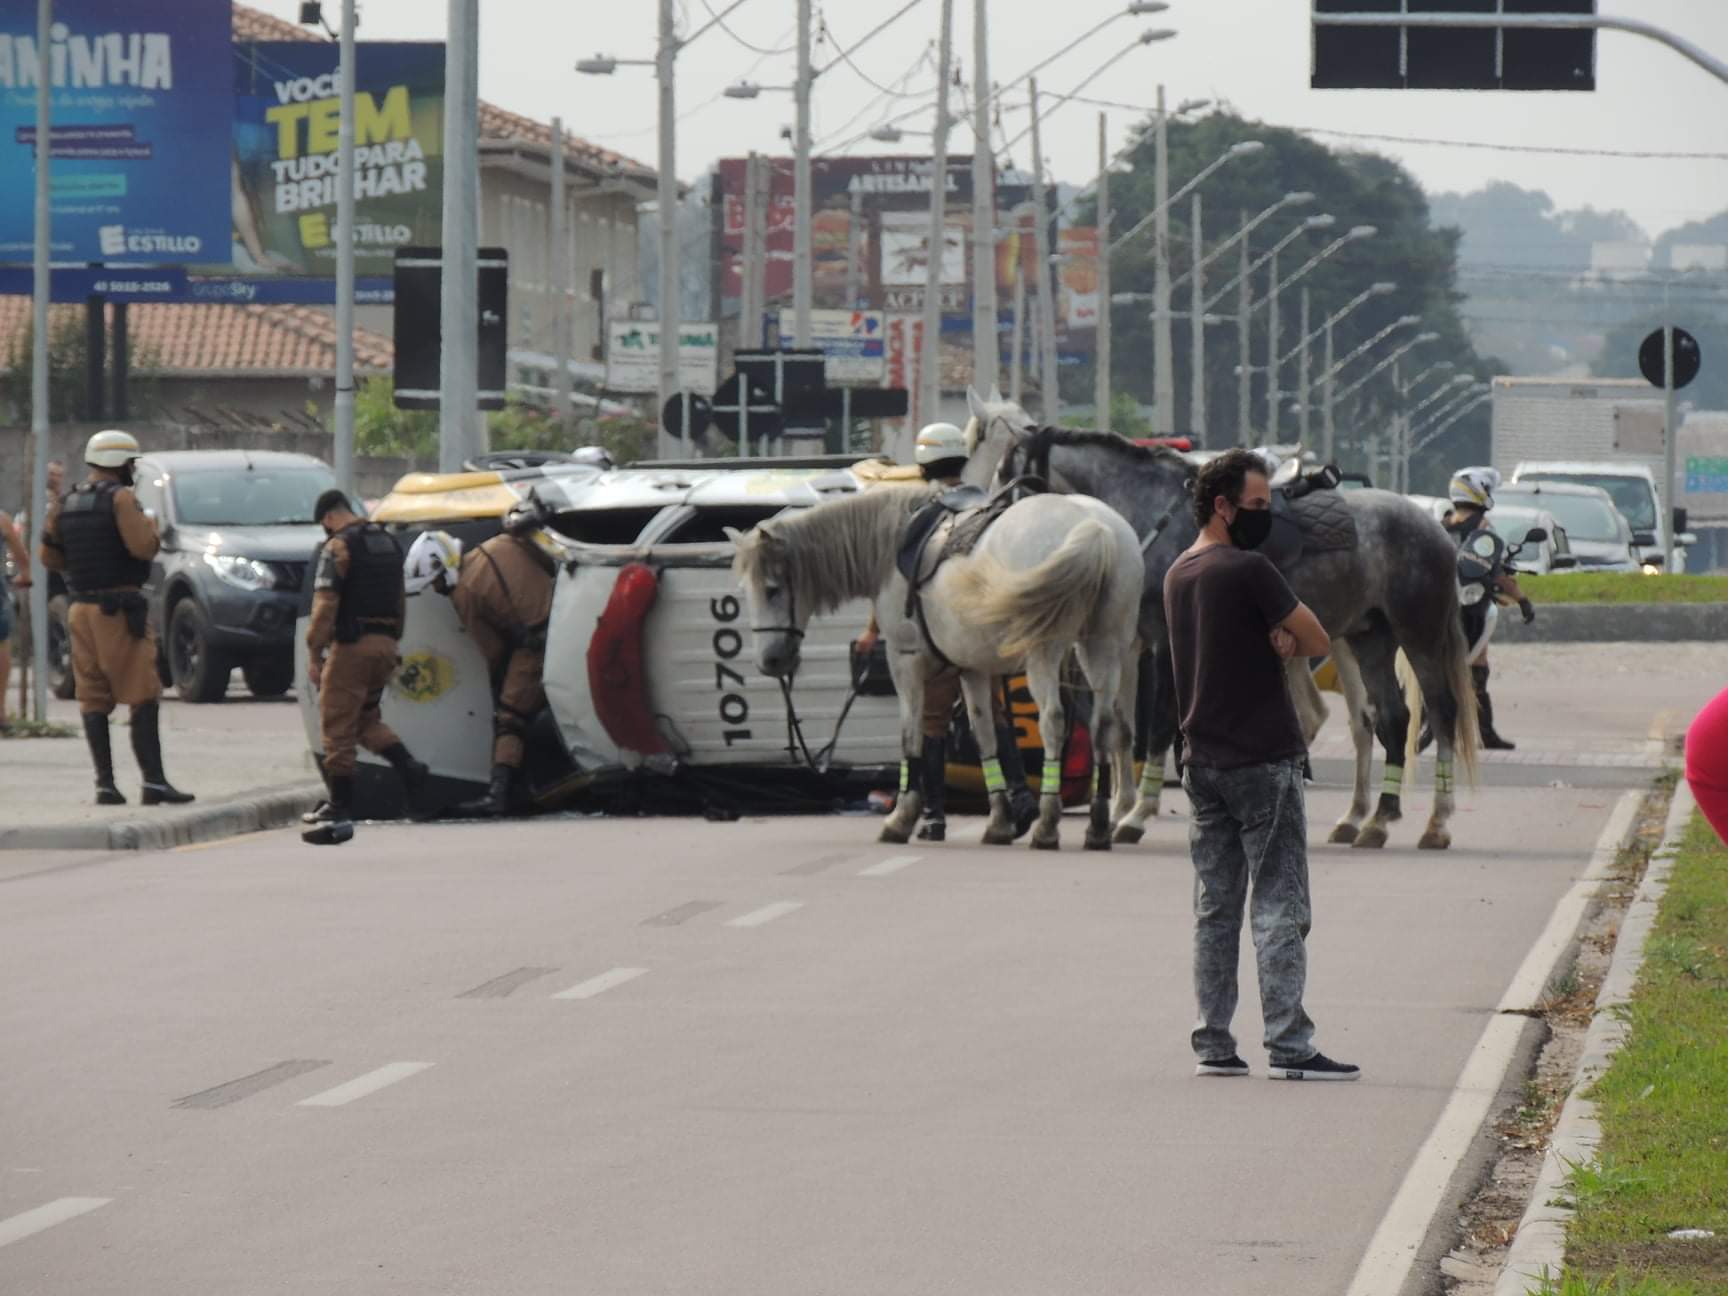 Viatura da PM capota no bairro Tarumã, em Curitiba; veja vídeos do acidente